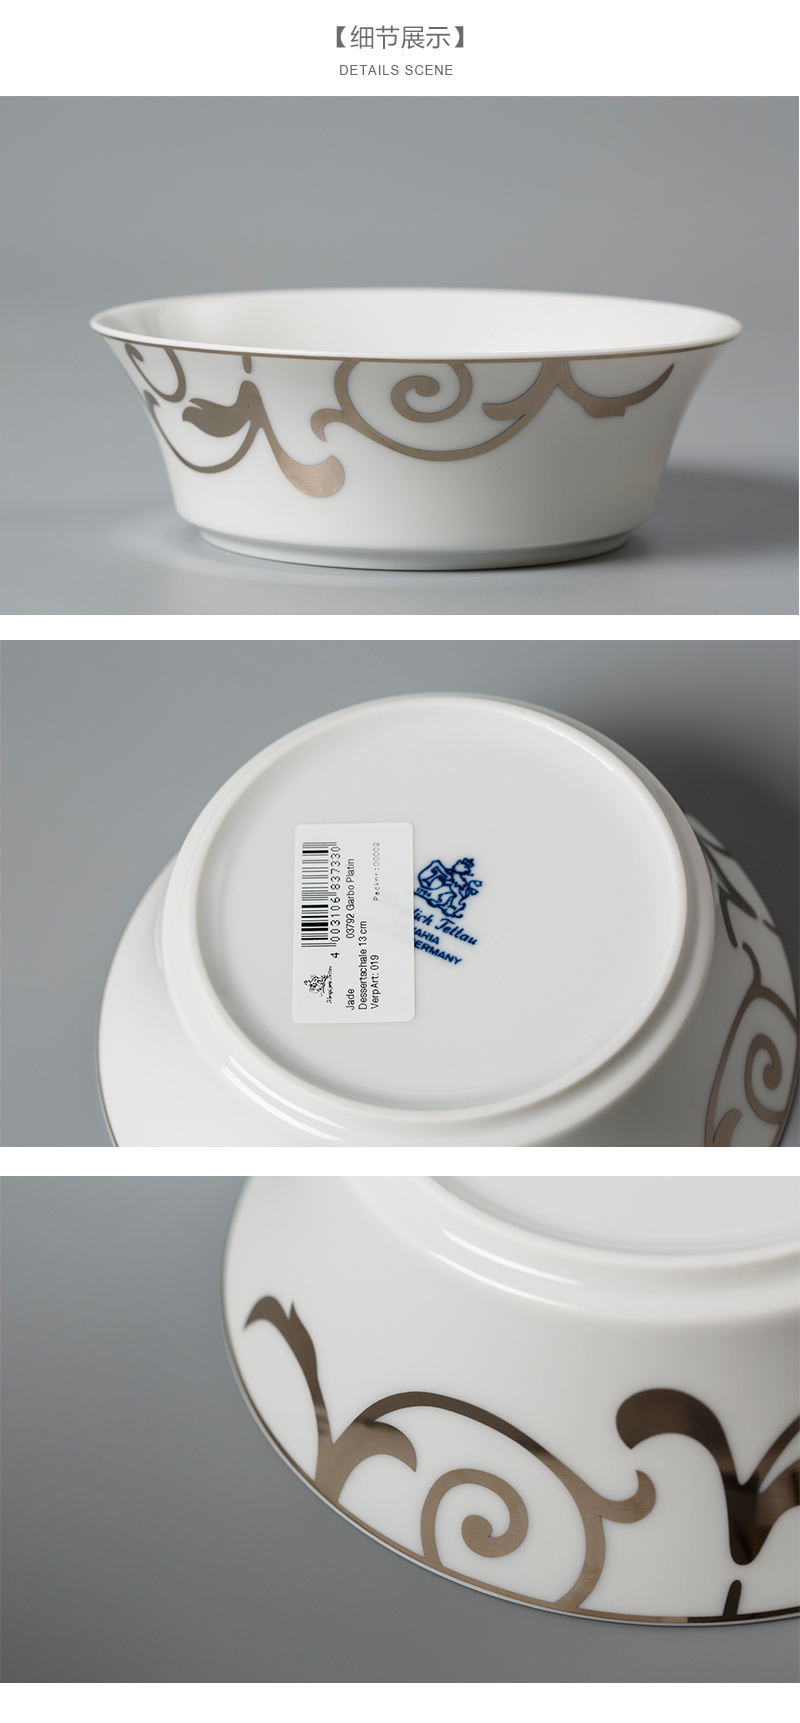 Seltmann Weiden铂金印花陶瓷碗细节展示